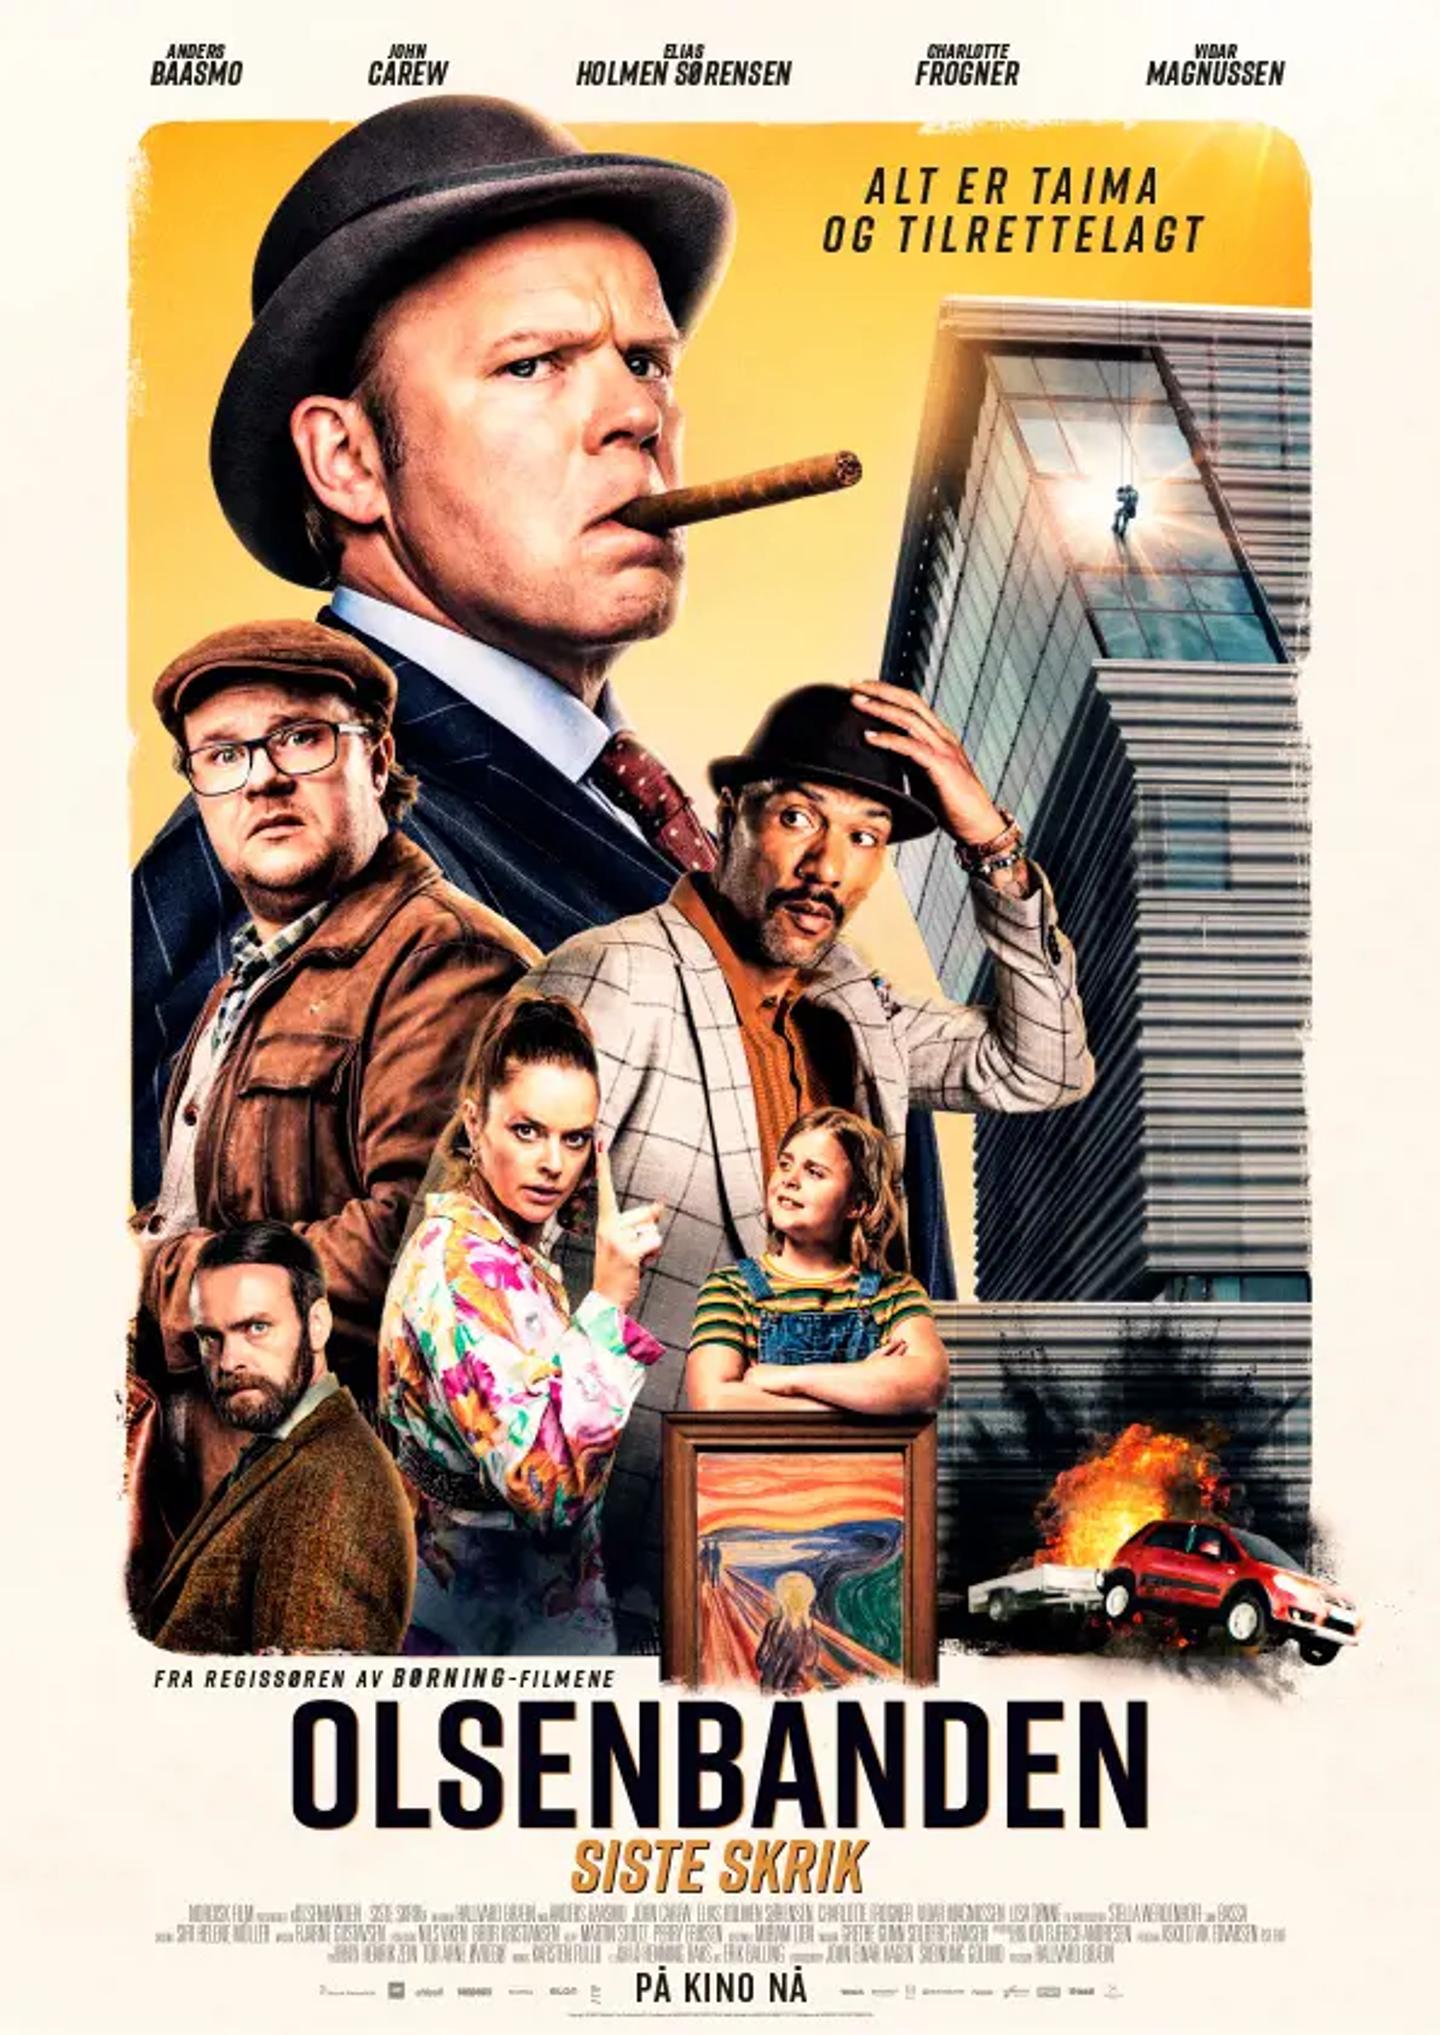 Plakat for 'Olsenbanden - siste skrik'